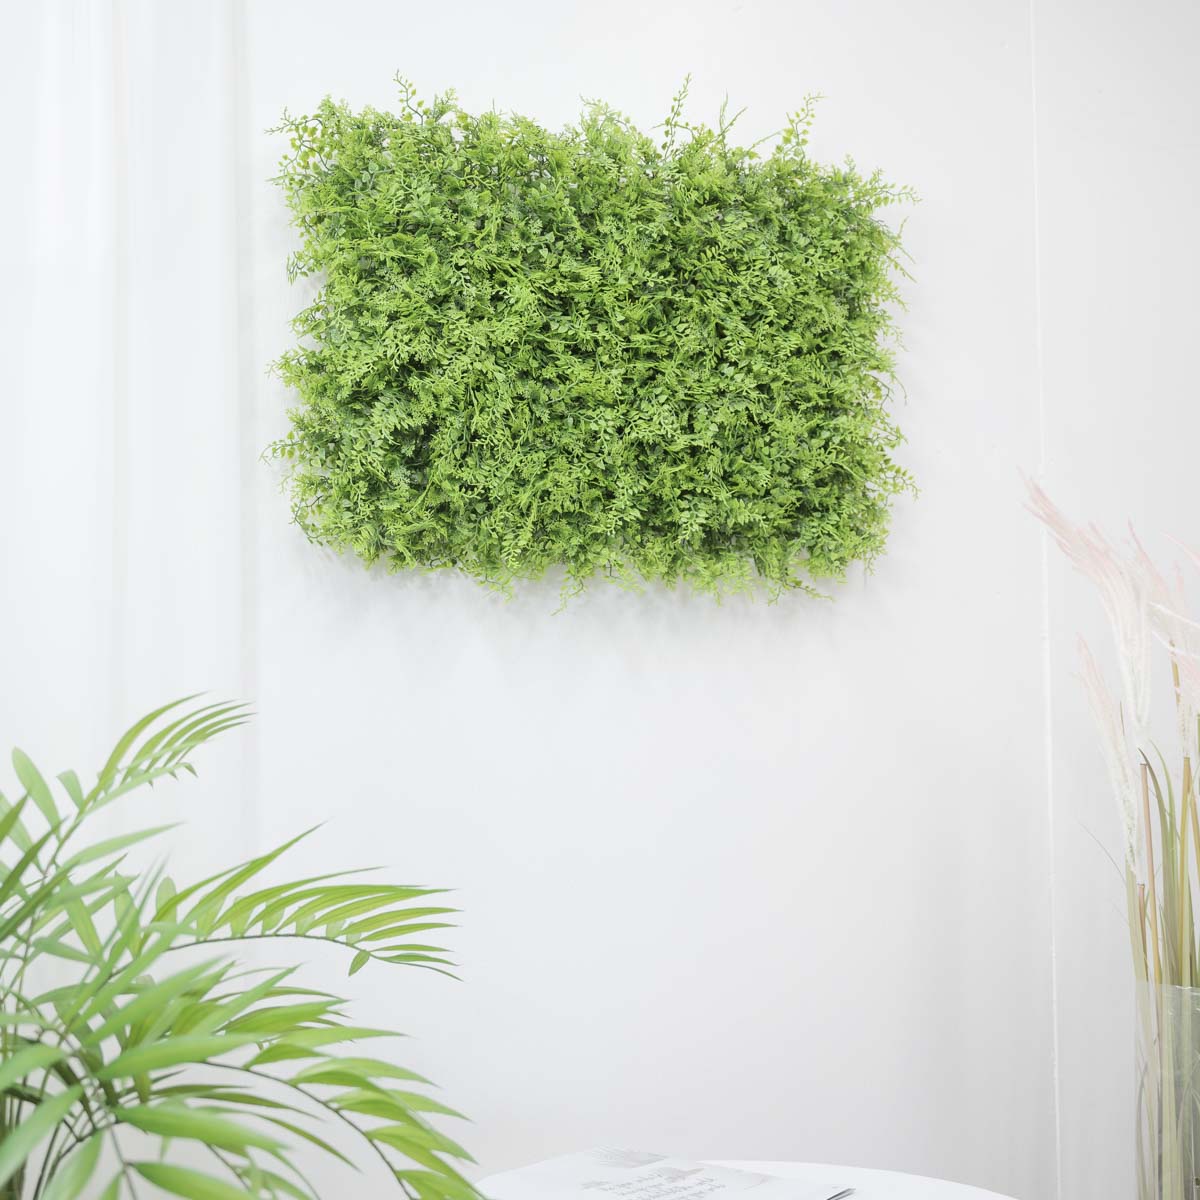 인조 식물매트 그린 잎사귀 믹스 60X40, 실내정원 식물벽 벽면녹화 상품 다중이미지 썸네일